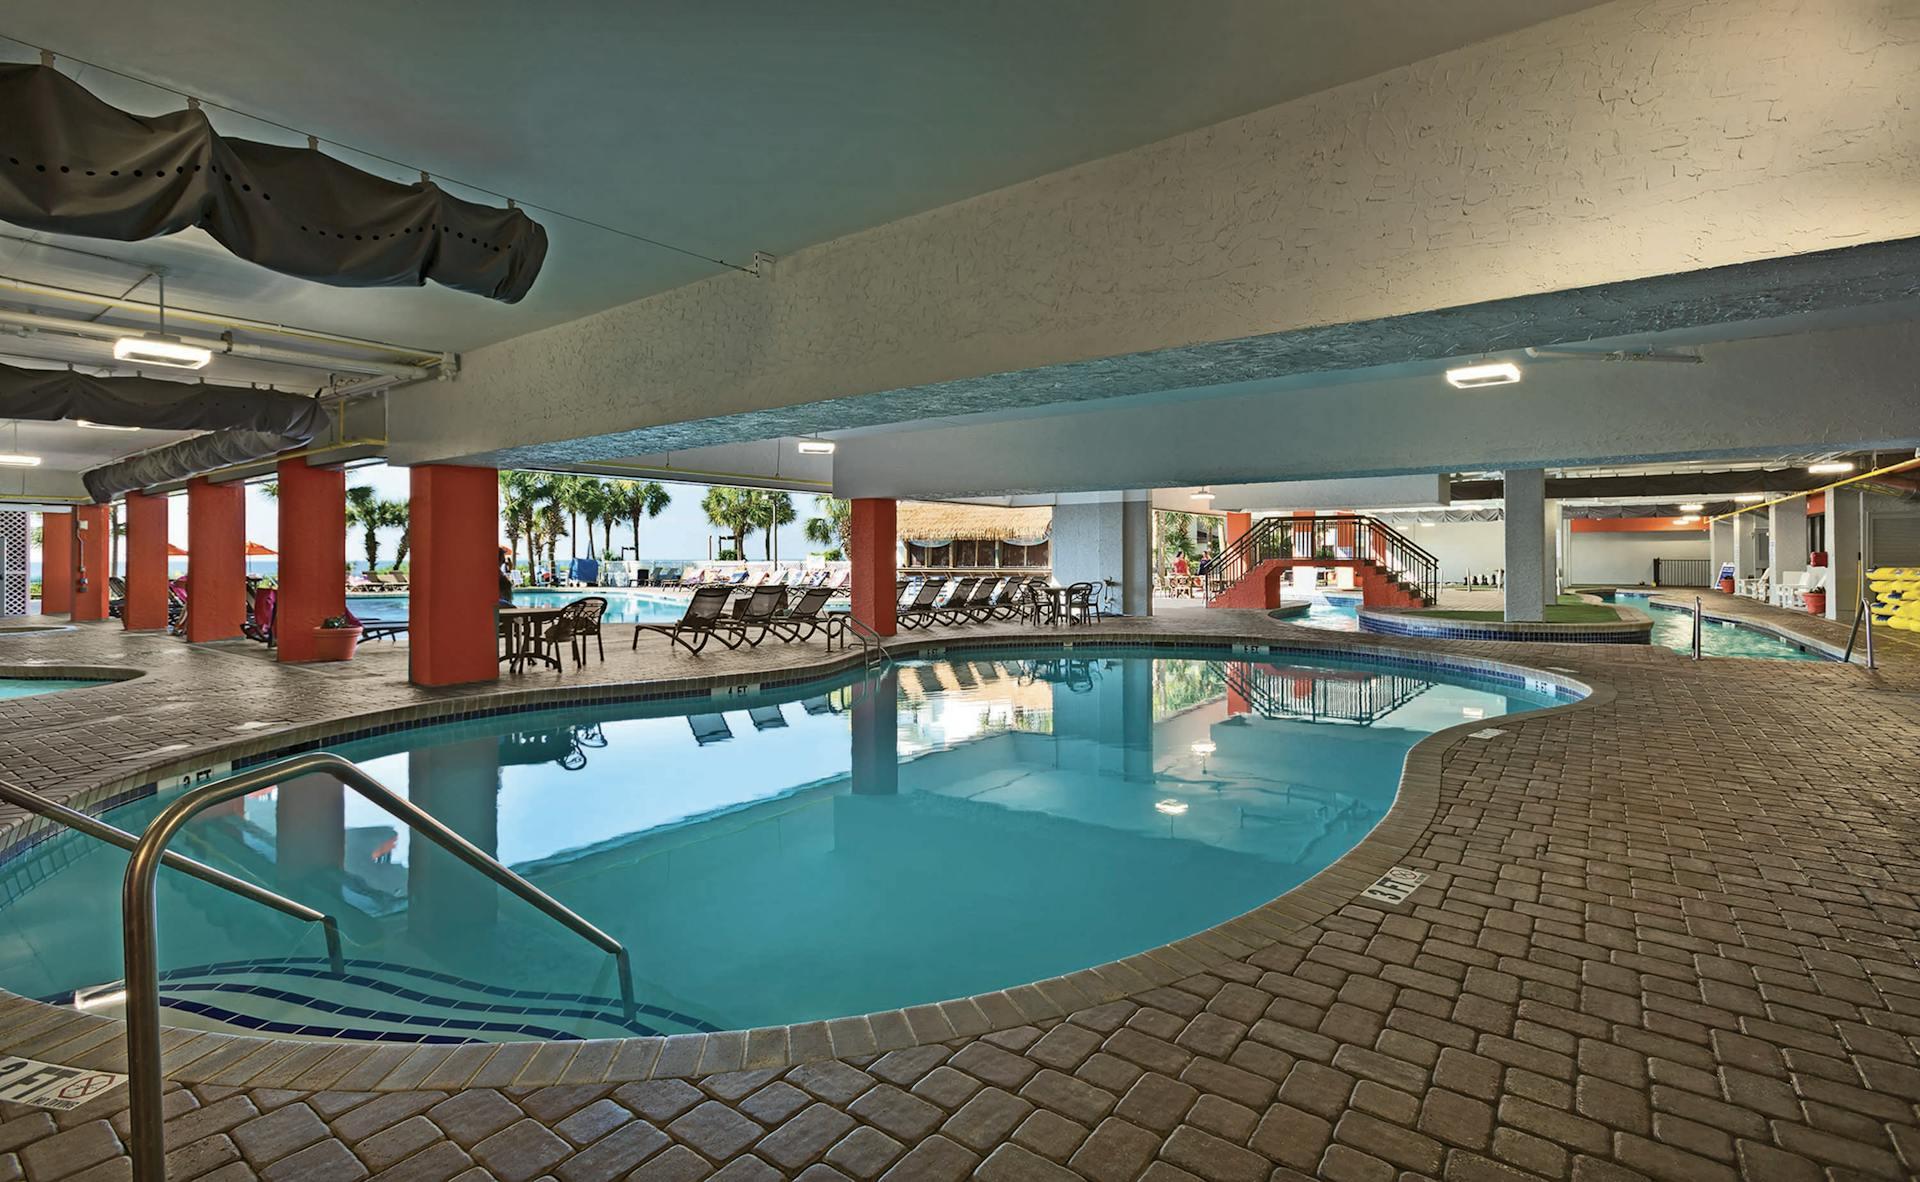 Grande Cayman Resort - 2 Room North Side View Condo